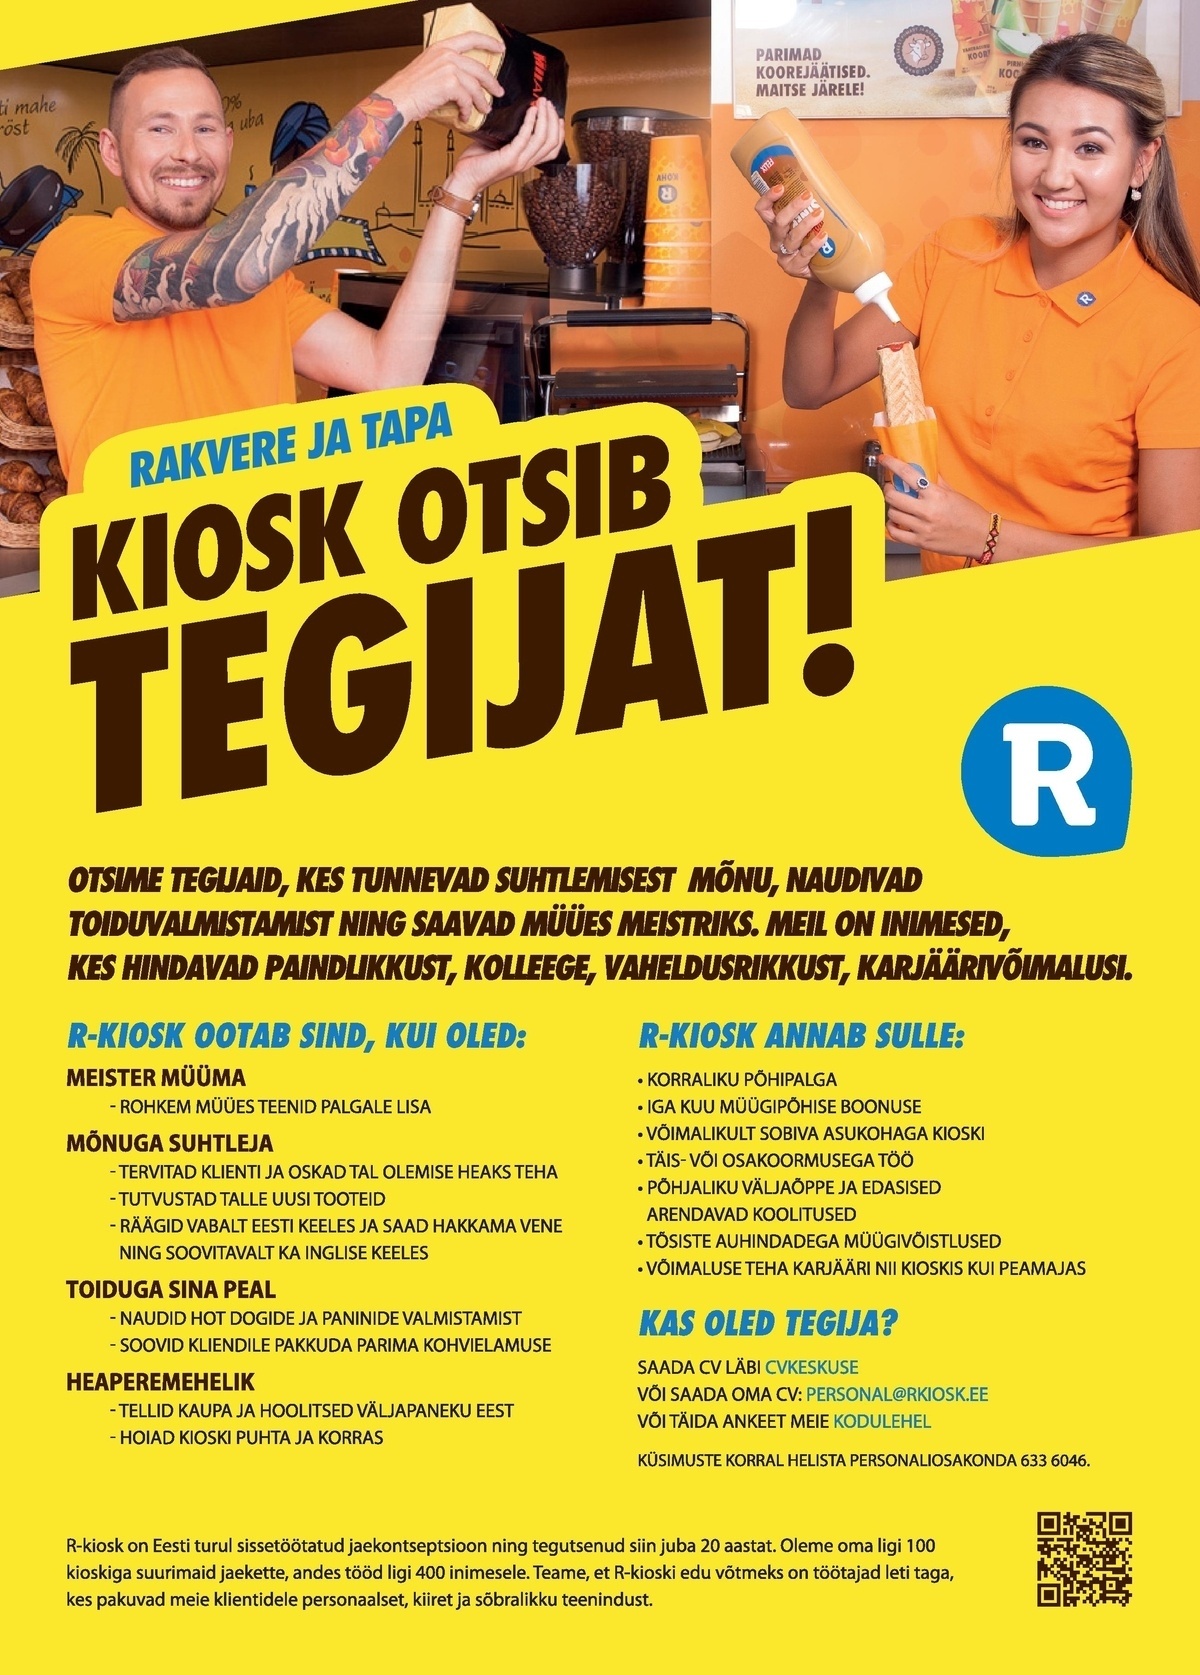 AS R-Kiosk Estonia Klienditeenindajaid Rakvere ja Tapa R-kioskisse